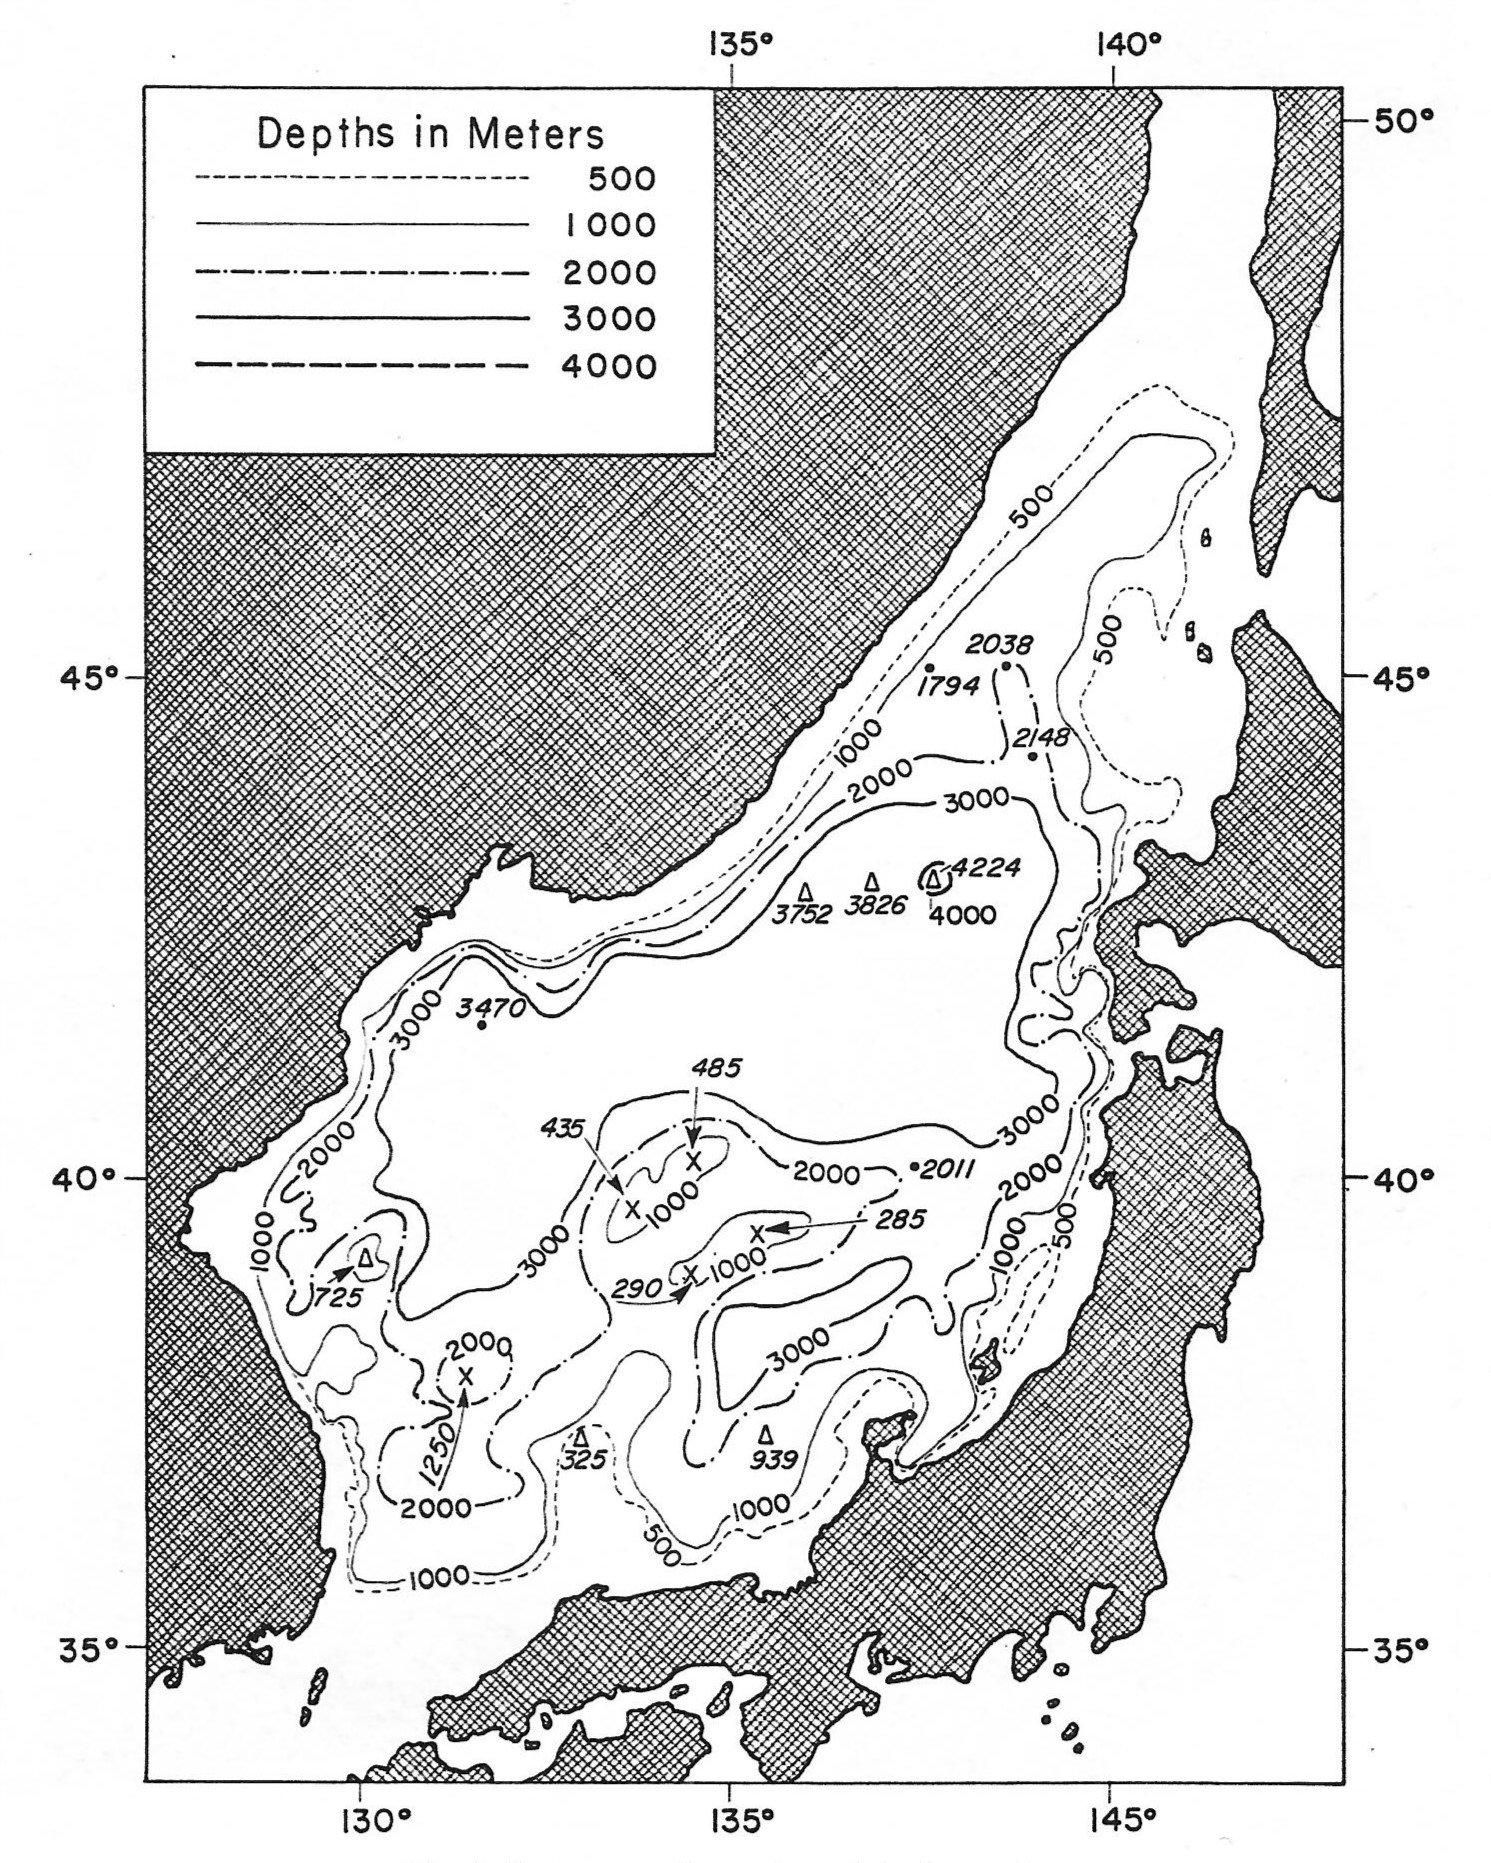 Рис. 5. Глубины Японского моря в Океанографической энциклопедии (Hidaka, 1966).